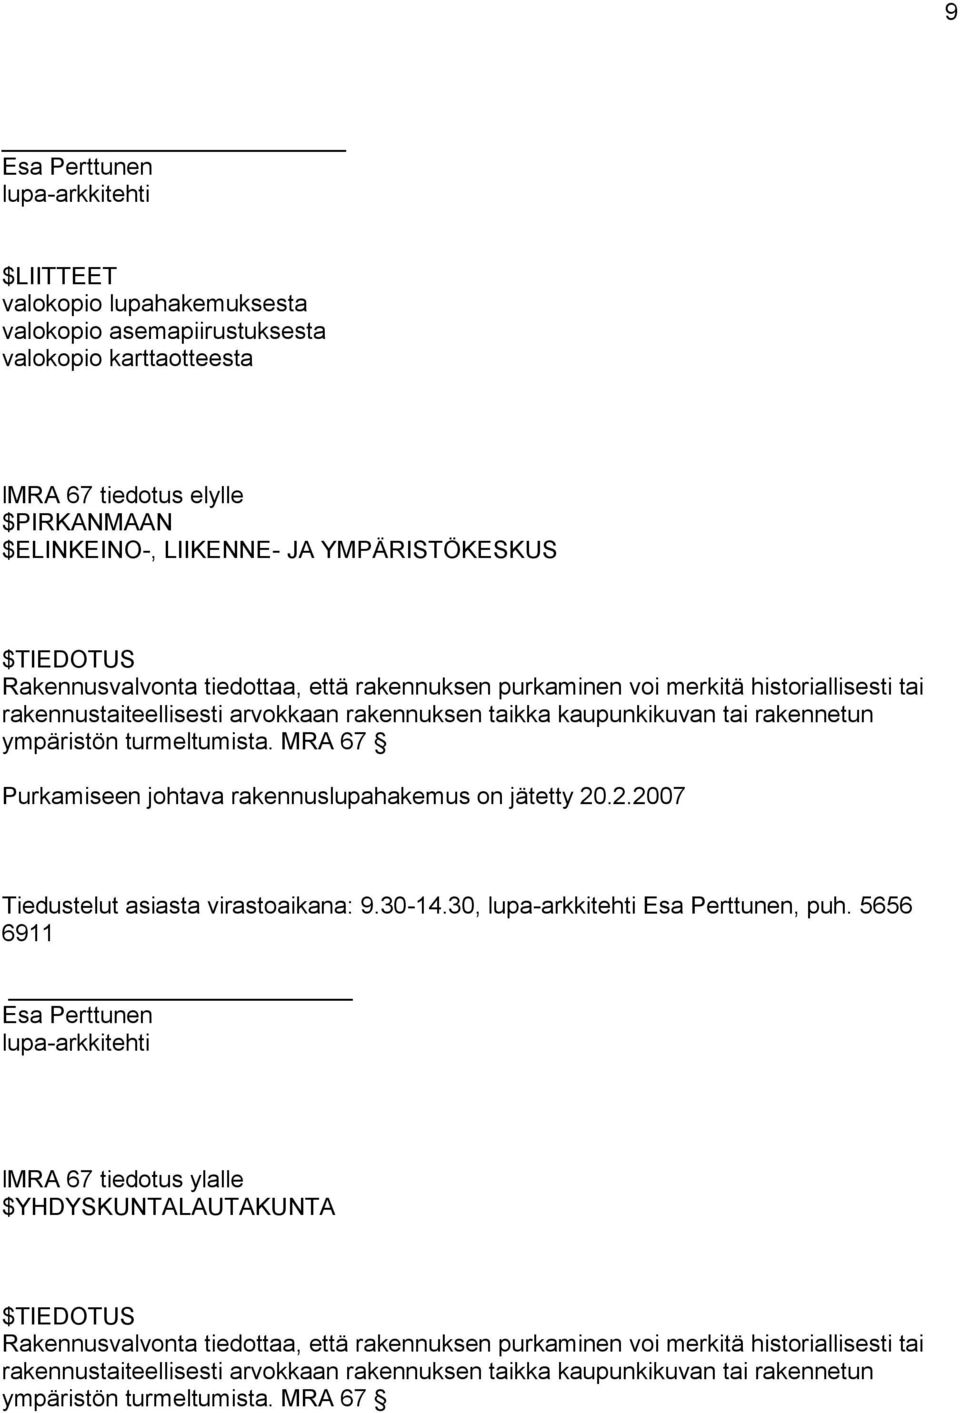 ympäristön turmeltumista. MRA 67 Purkamiseen johtava rakennuslupahakemus on jätetty 20.2.2007 Tiedustelut asiasta virastoaikana: 9.30-14.30, lupa-arkkitehti Esa Perttunen, puh.